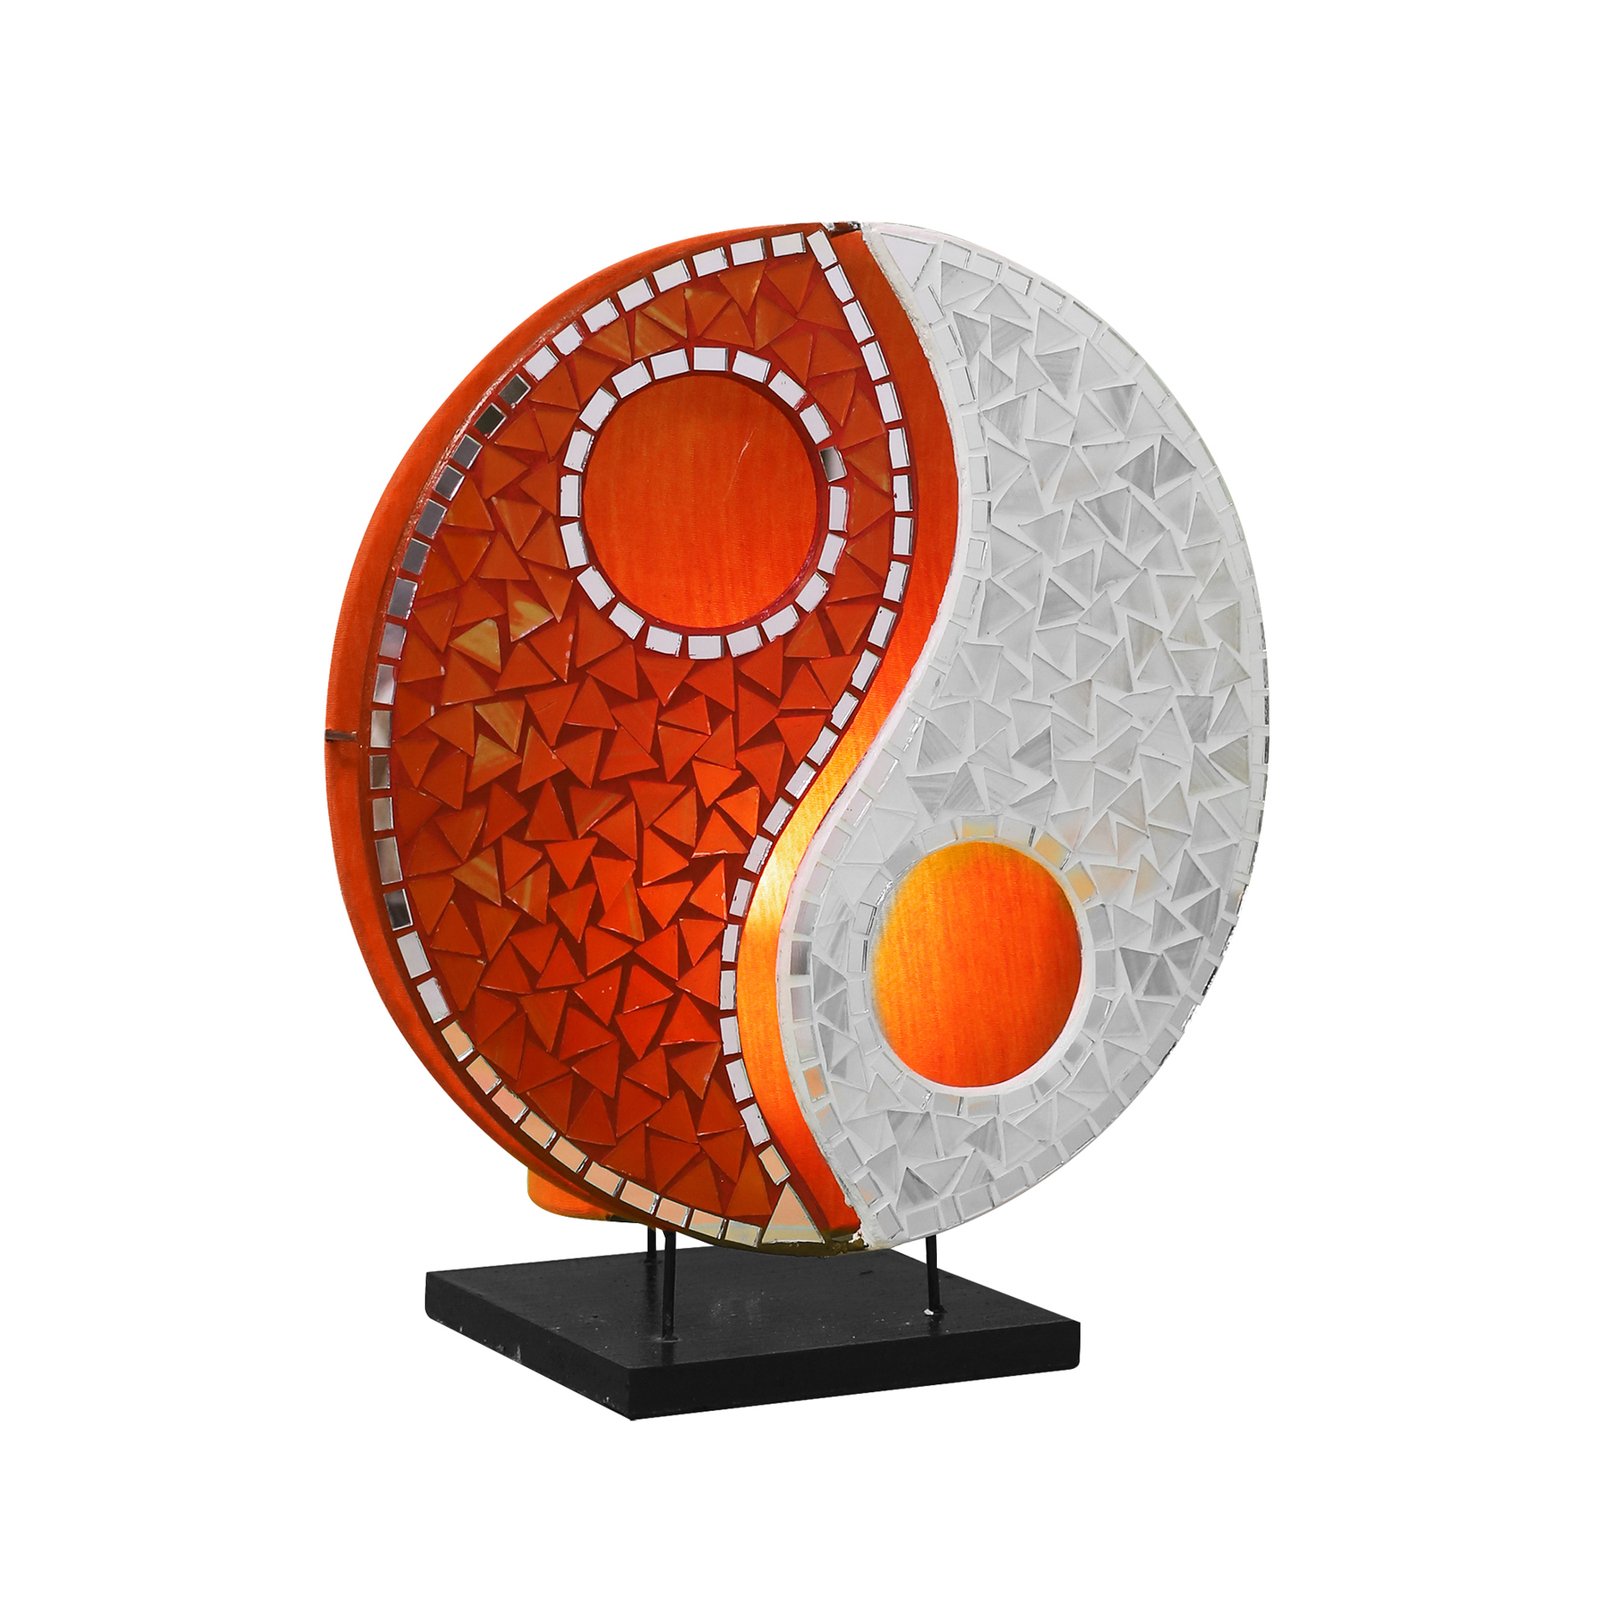 Ying Yang bordslampa i glasmosaik orange/vit